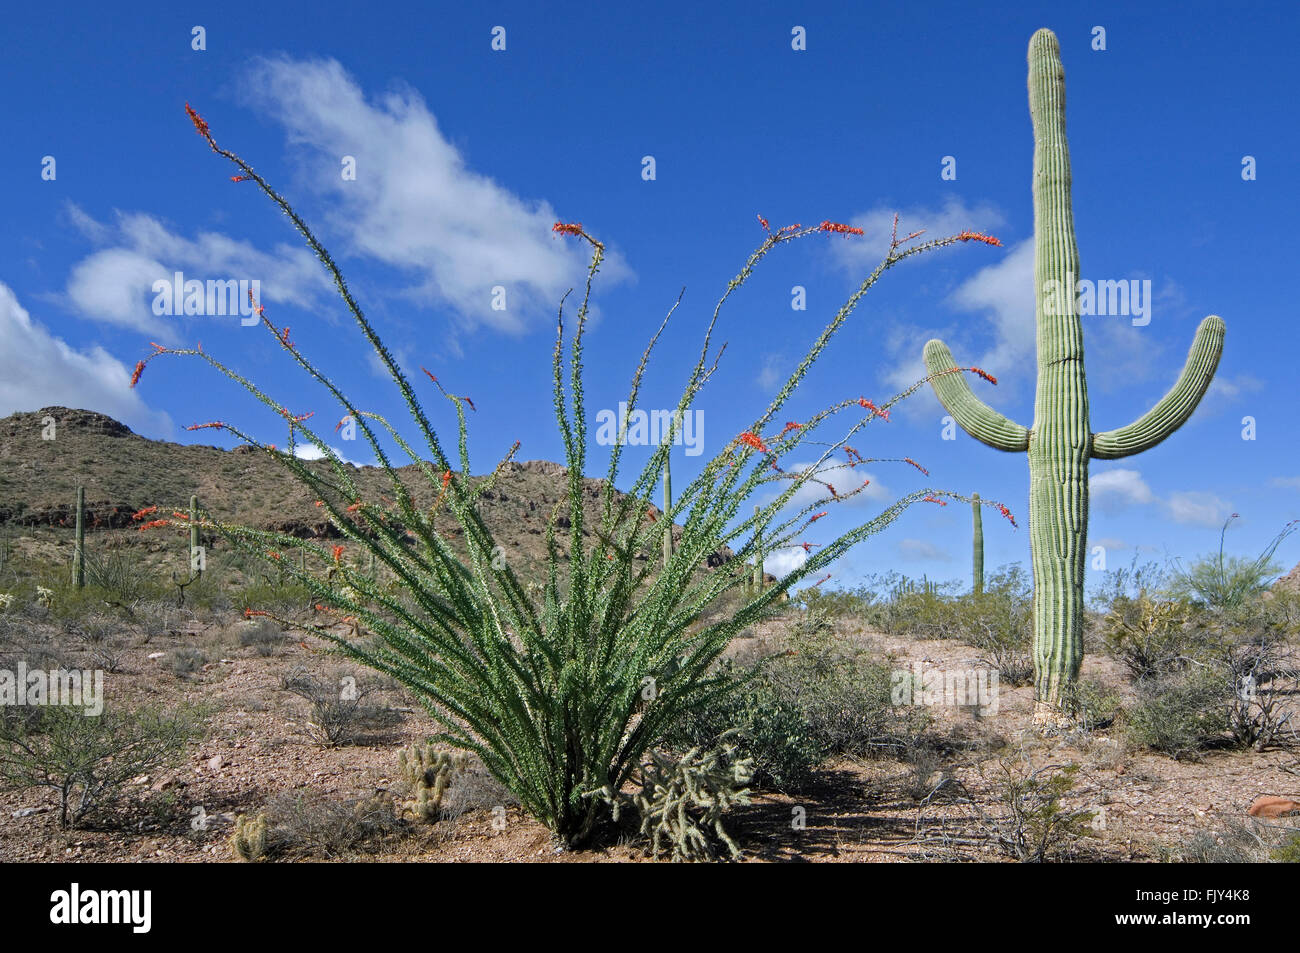 Ocotillo / coachwhip / candlewood (Fouquieria splendens / Fouquieria spinosa) in bloom and Saguaro cactus (Carnegiea gigantea) Stock Photo